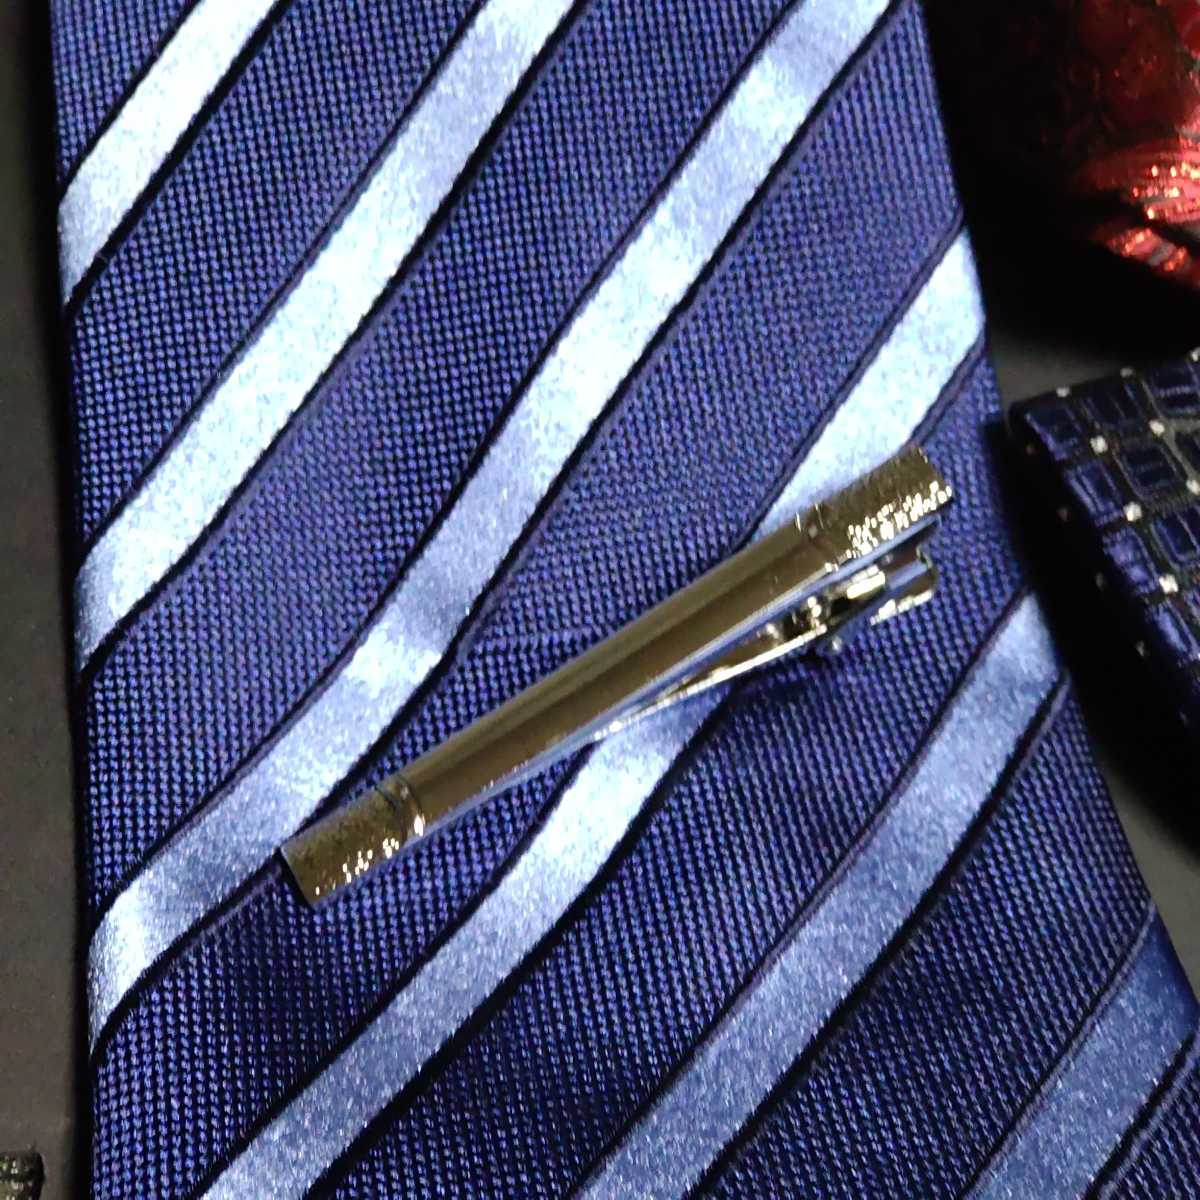  галстук товары 6 позиций комплект * галстук * бабочка галстук * pocket square * запонки * булавка для галстука 2 вид имеется / формальный одежда 